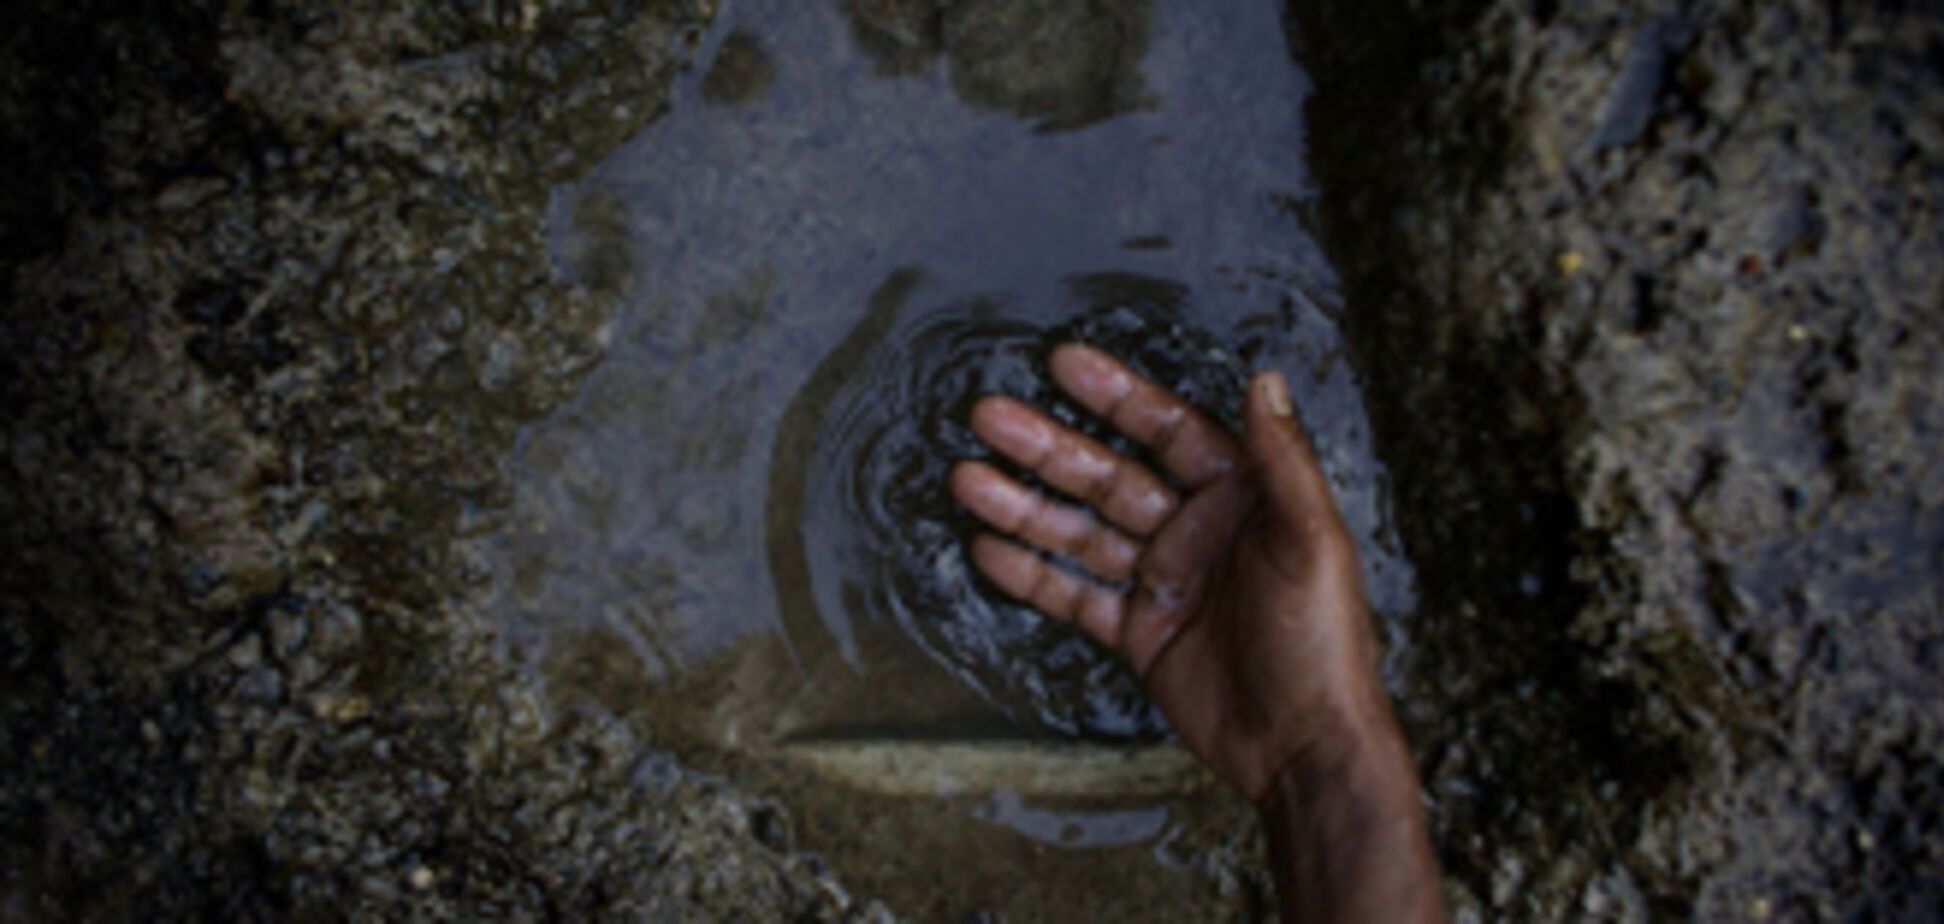 Індія вже відчула проблему нестачі води